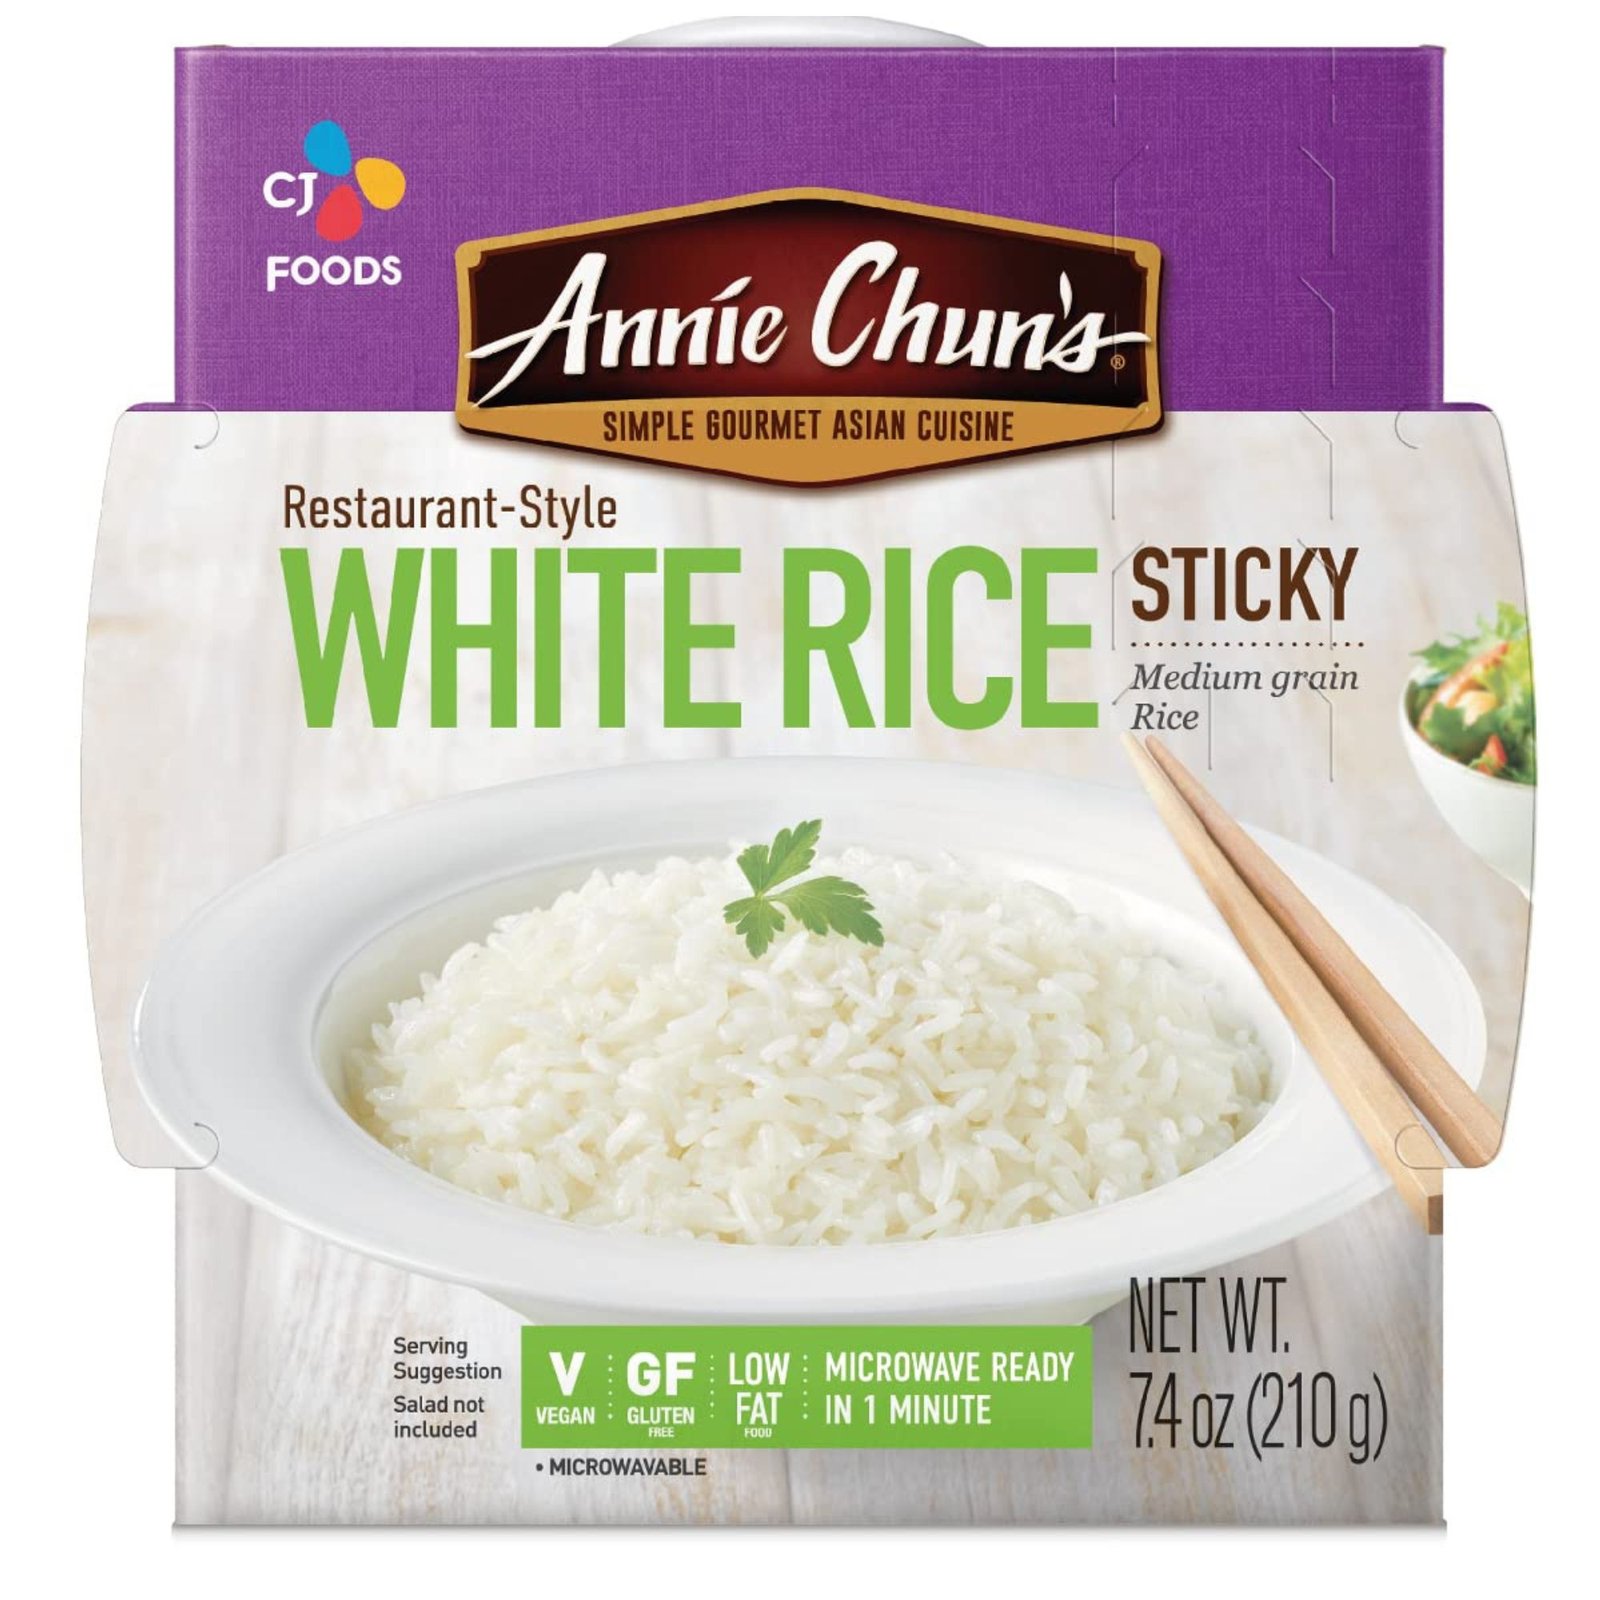 The 10 Best Gluten Free Rice Brands 2